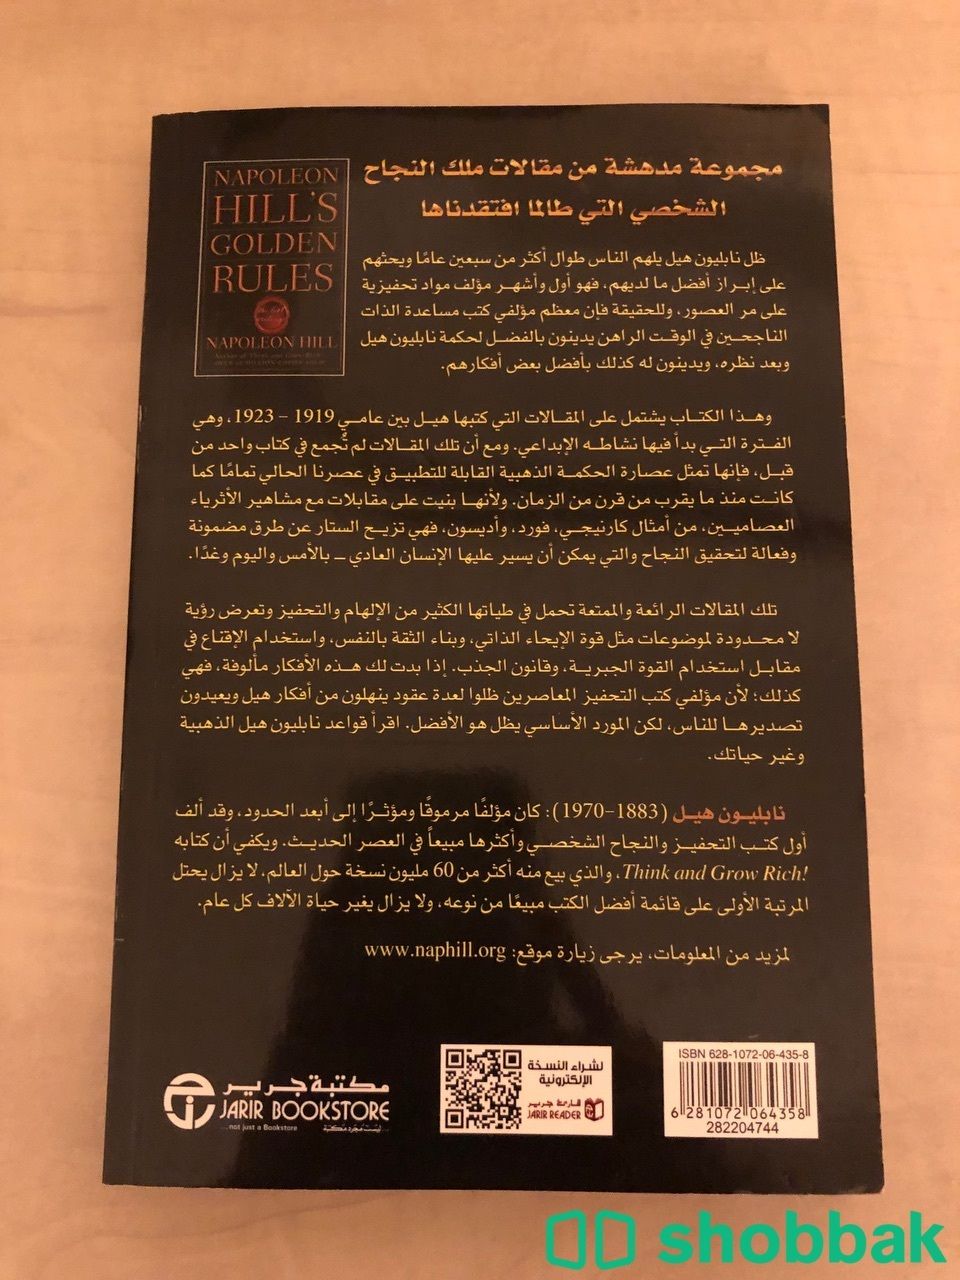 كتاب القواعد الذهبية لنابليون هيل50 شباك السعودية